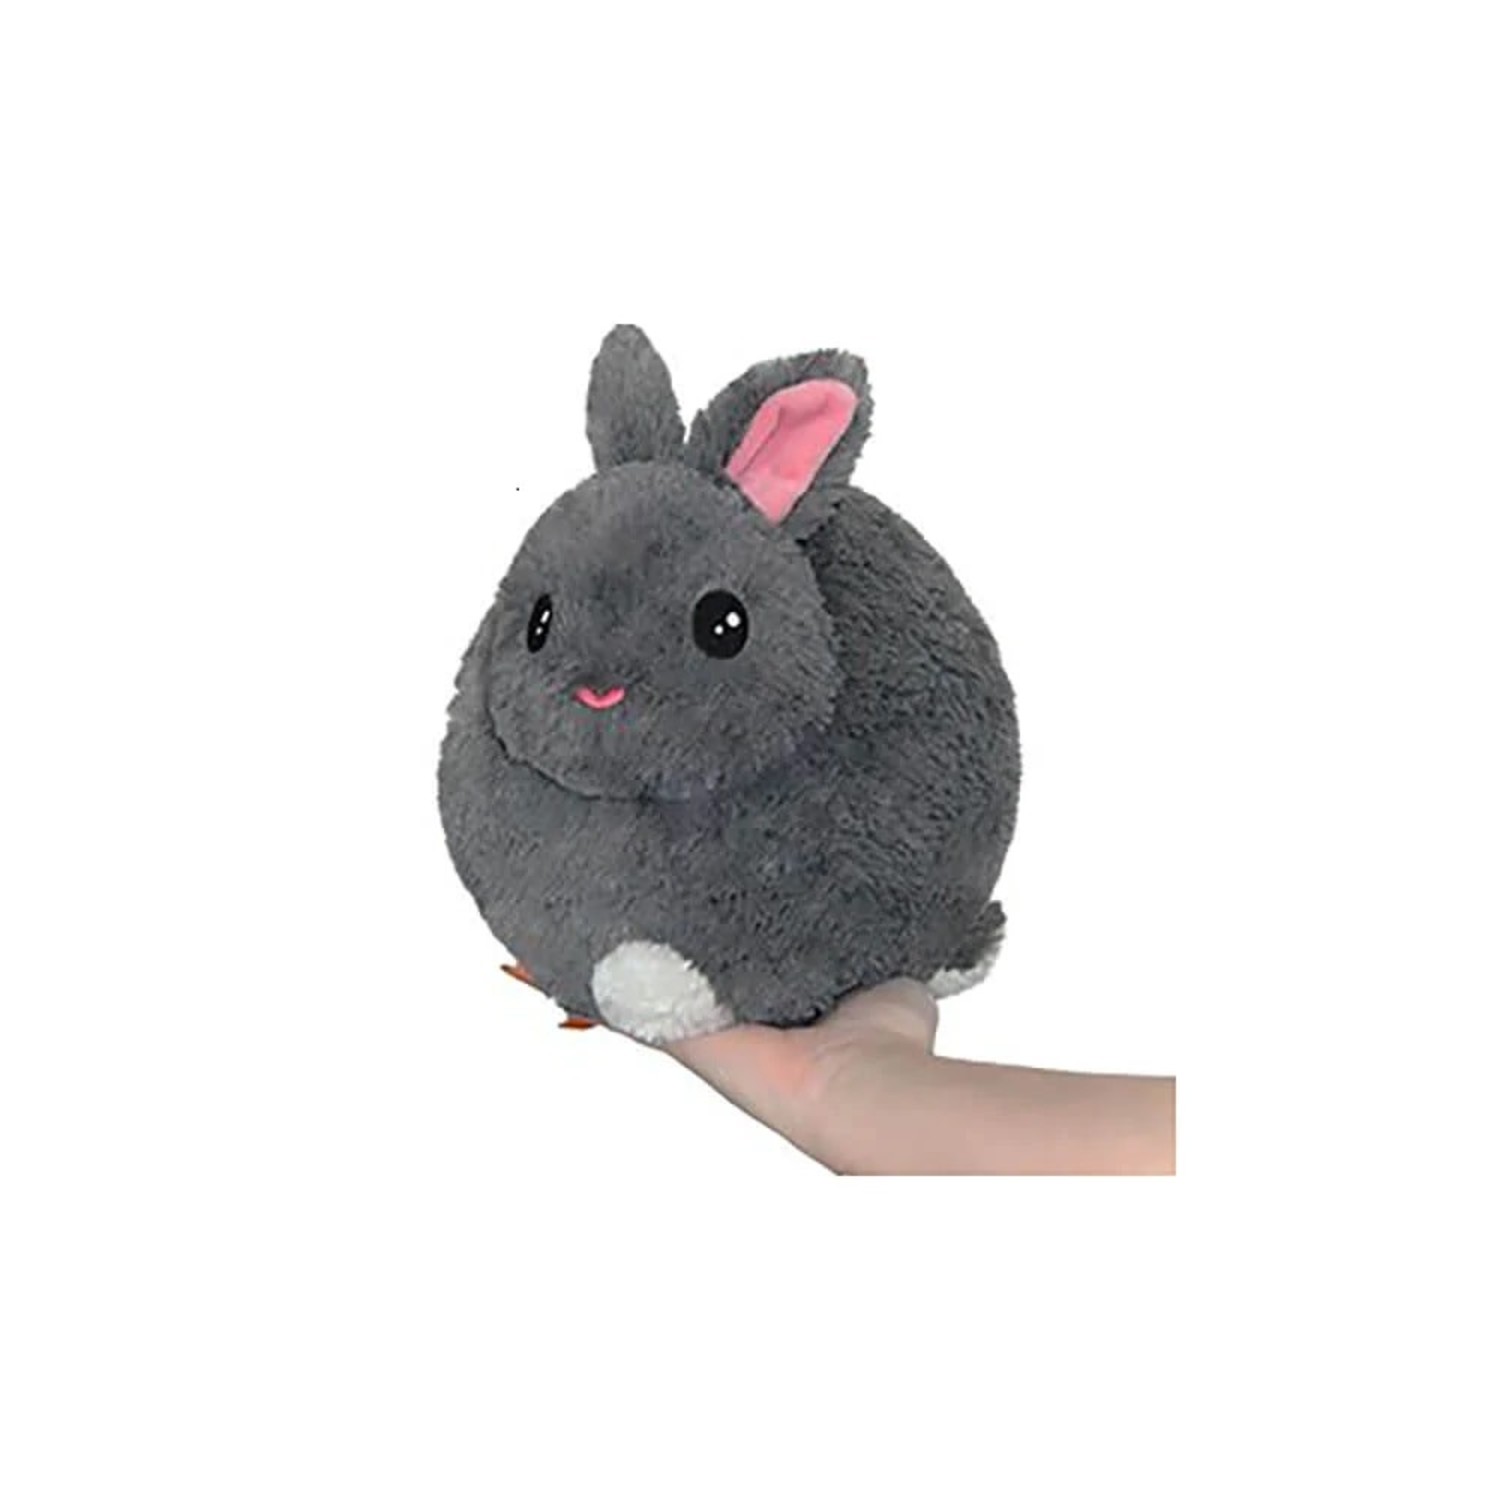 Mini Squishable Netherland Dwarf Bunny (7")